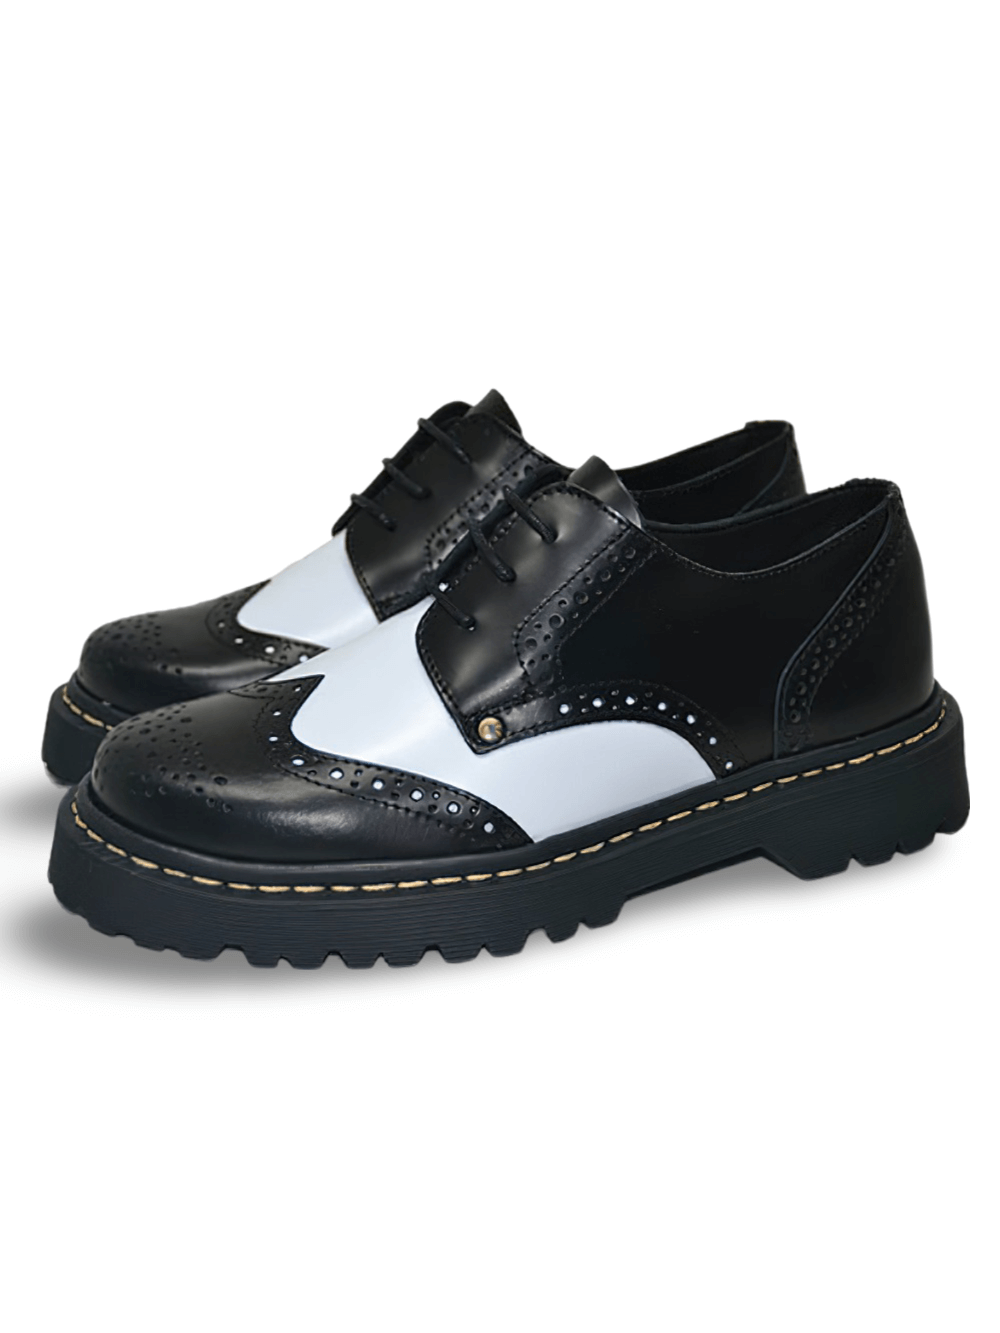 Elegantes Zapatos de Piel Blanco y Negro con Suela TR